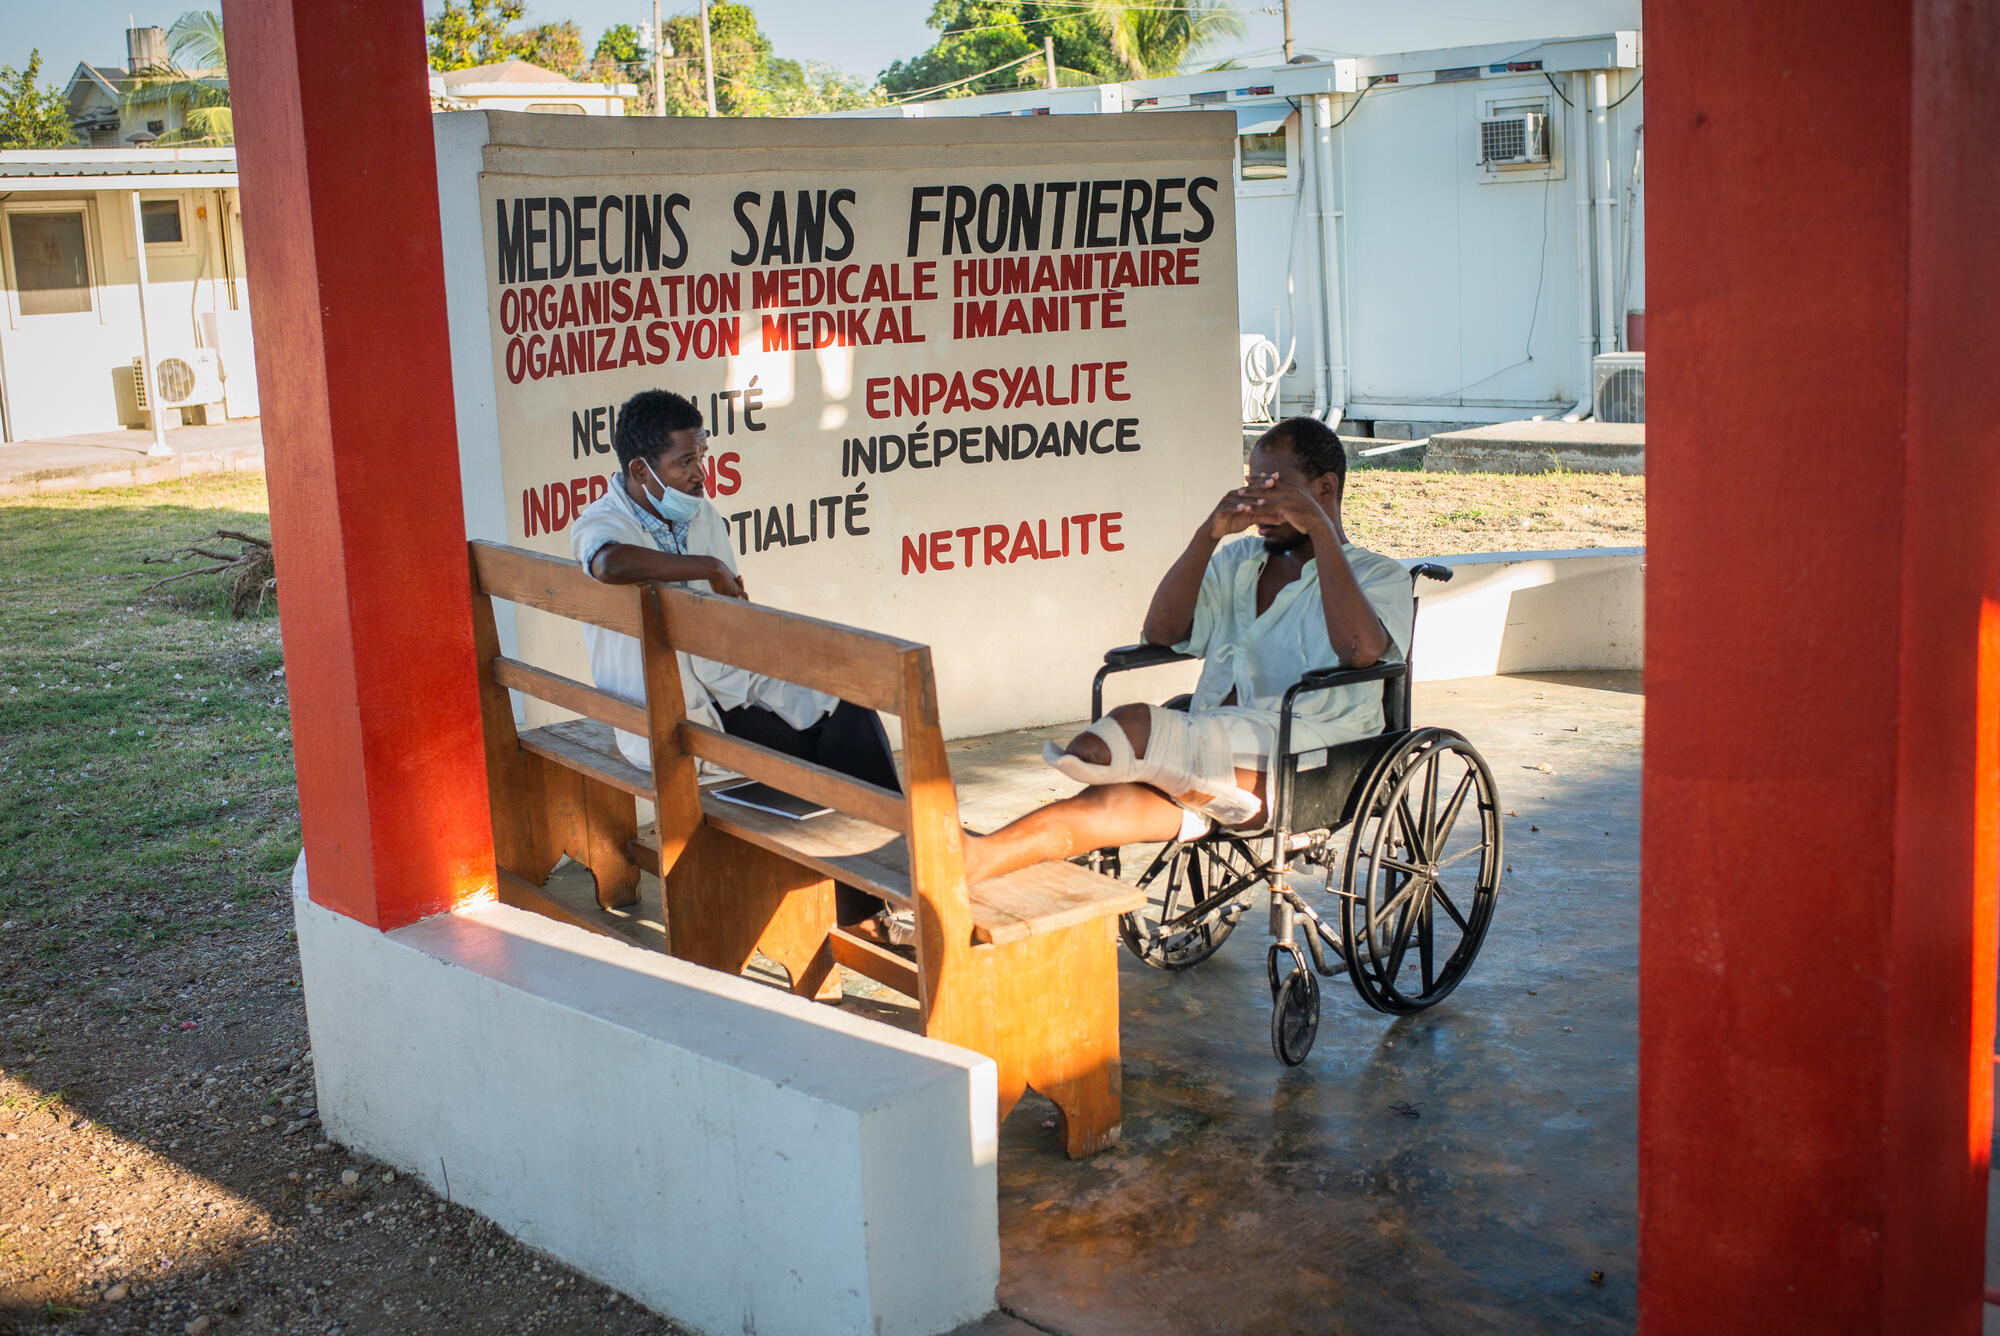 مريض يتحدث إلى الطبيب النفسي في فناء مستشفى تاباري، الذي اضطر إلى تقليص خدماته الطبية الحيوية بشكل كبير بسبب أزمة الوقود في البلاد. هايتي، في ديسمبر/كانون الأول 2020. GUILLAUME BINET/MYOP